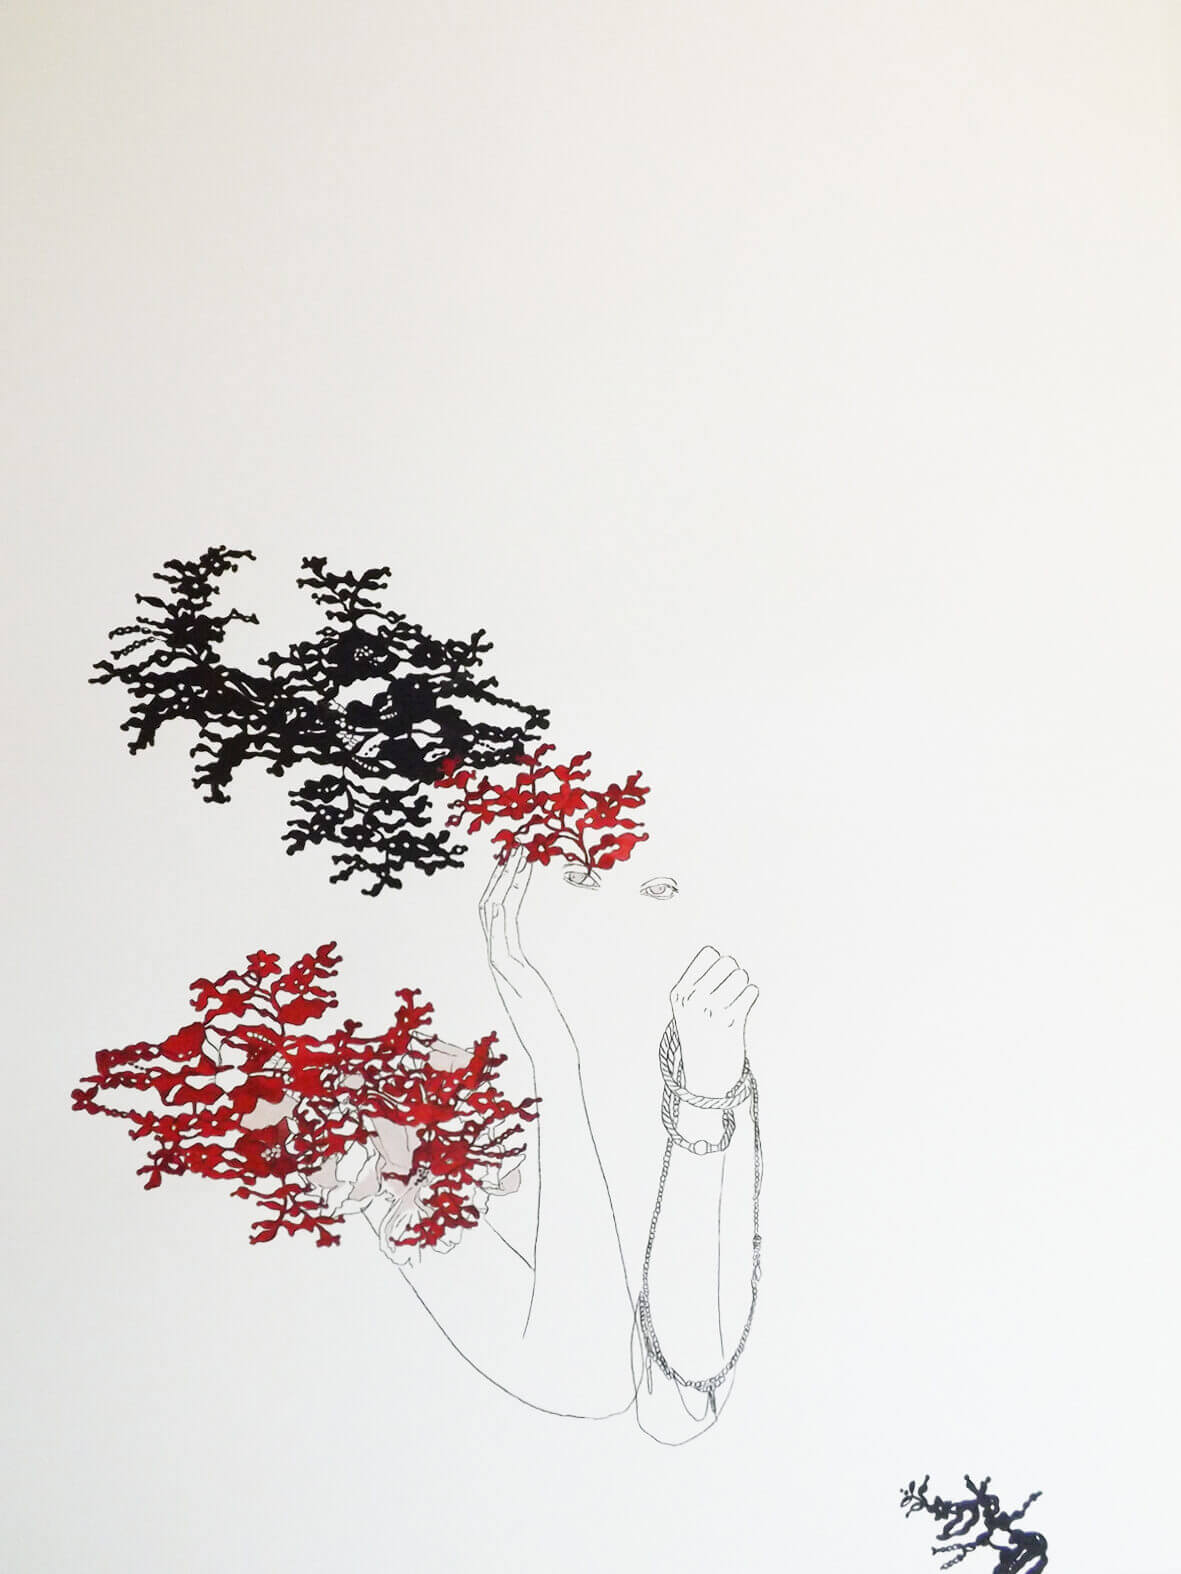 Hechizo Rosa / Las princesas delicadas.
Técnica mixta (acuarela, acrílico y grafito) sobre papel. 
83x63 cms